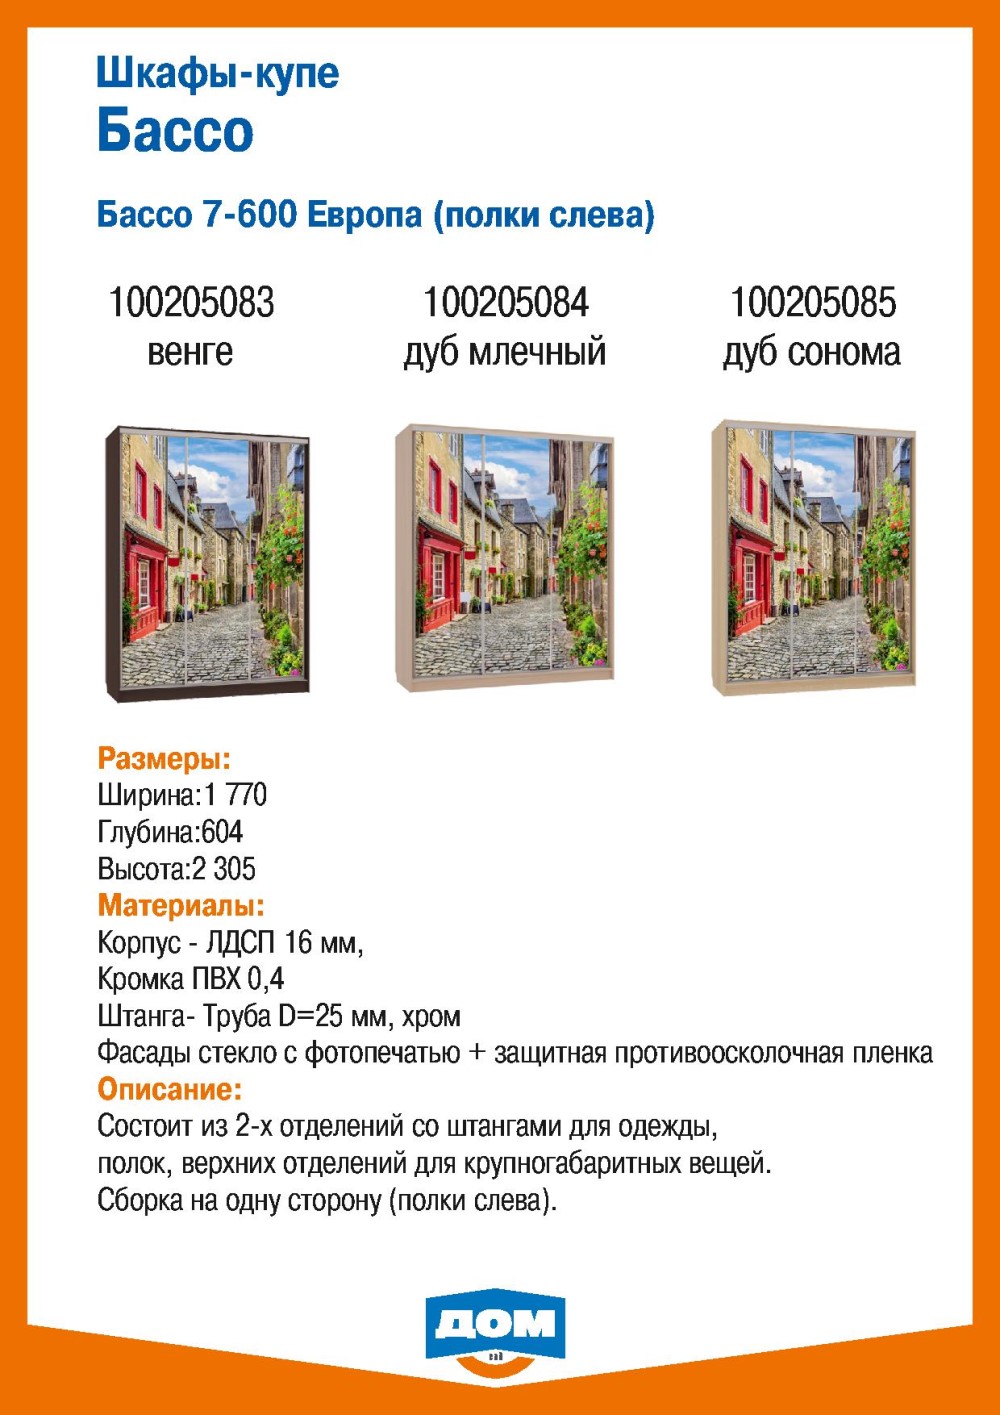 акции и скидки в каталоге товаров магазина ДОМ города Екатеринбург